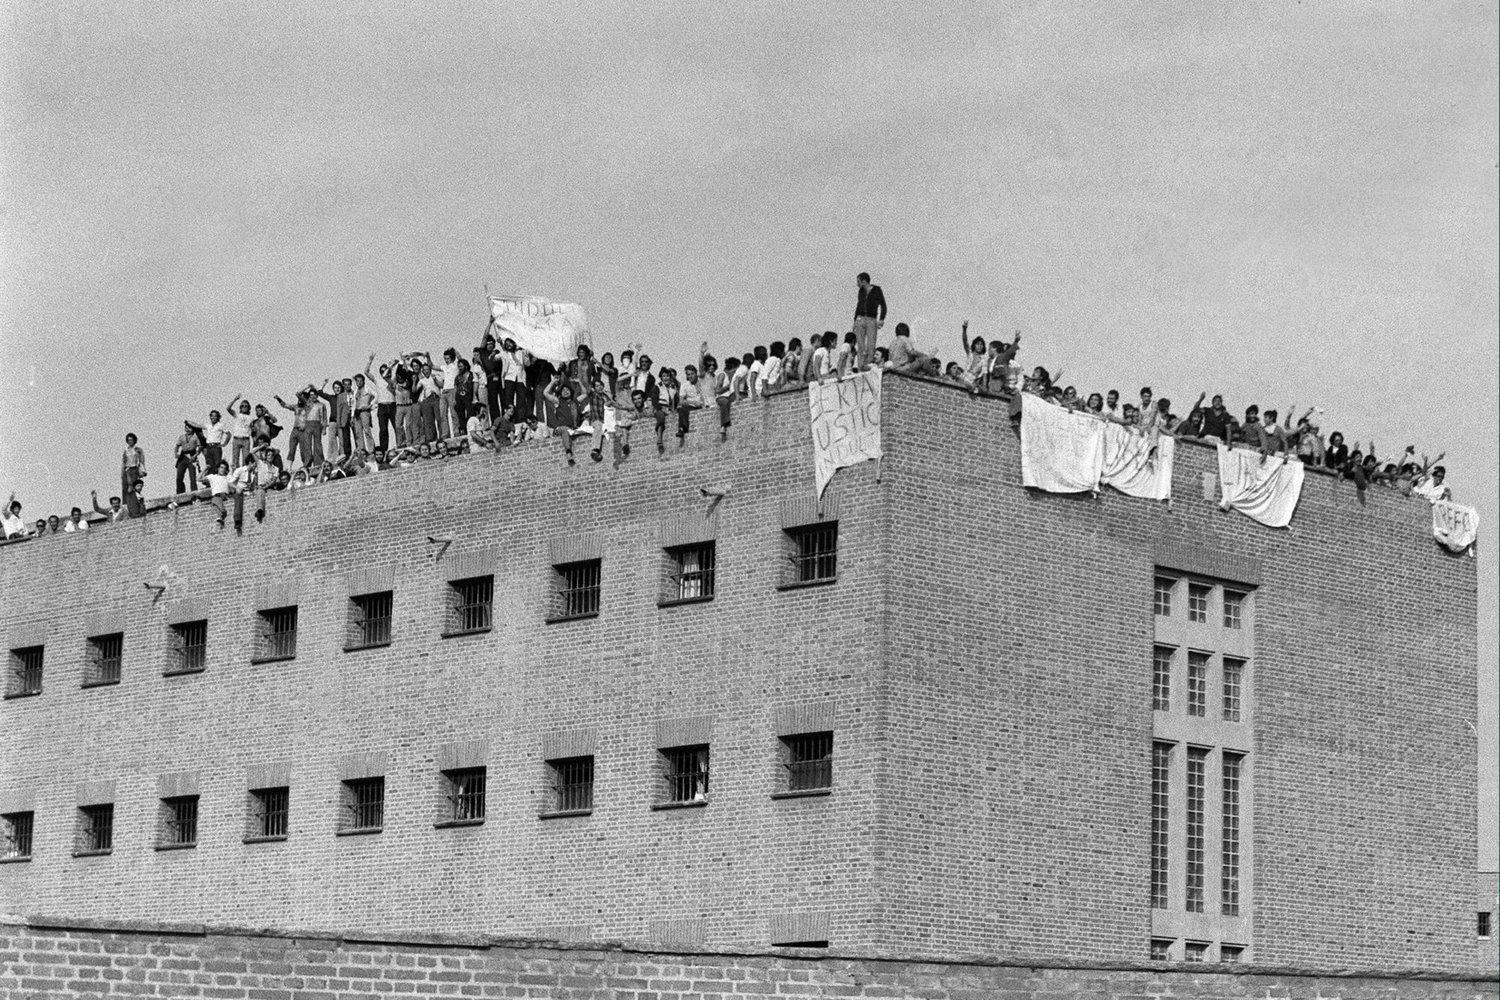 MOTÍN EN CARABANCHEL: Madrid, 31-7-1976.- Entre cien y ciento cincuenta presos comunes de la quinta galería de la cárcel de Carabanchel se amotinaron, negándose a comer y trabajar, alegando que querían beneficiarse de la amnistía real. Se subieron a la terraza con pancartas en las que se leía "Libertad" y "Reforma del Código Penal".EFE/ aa